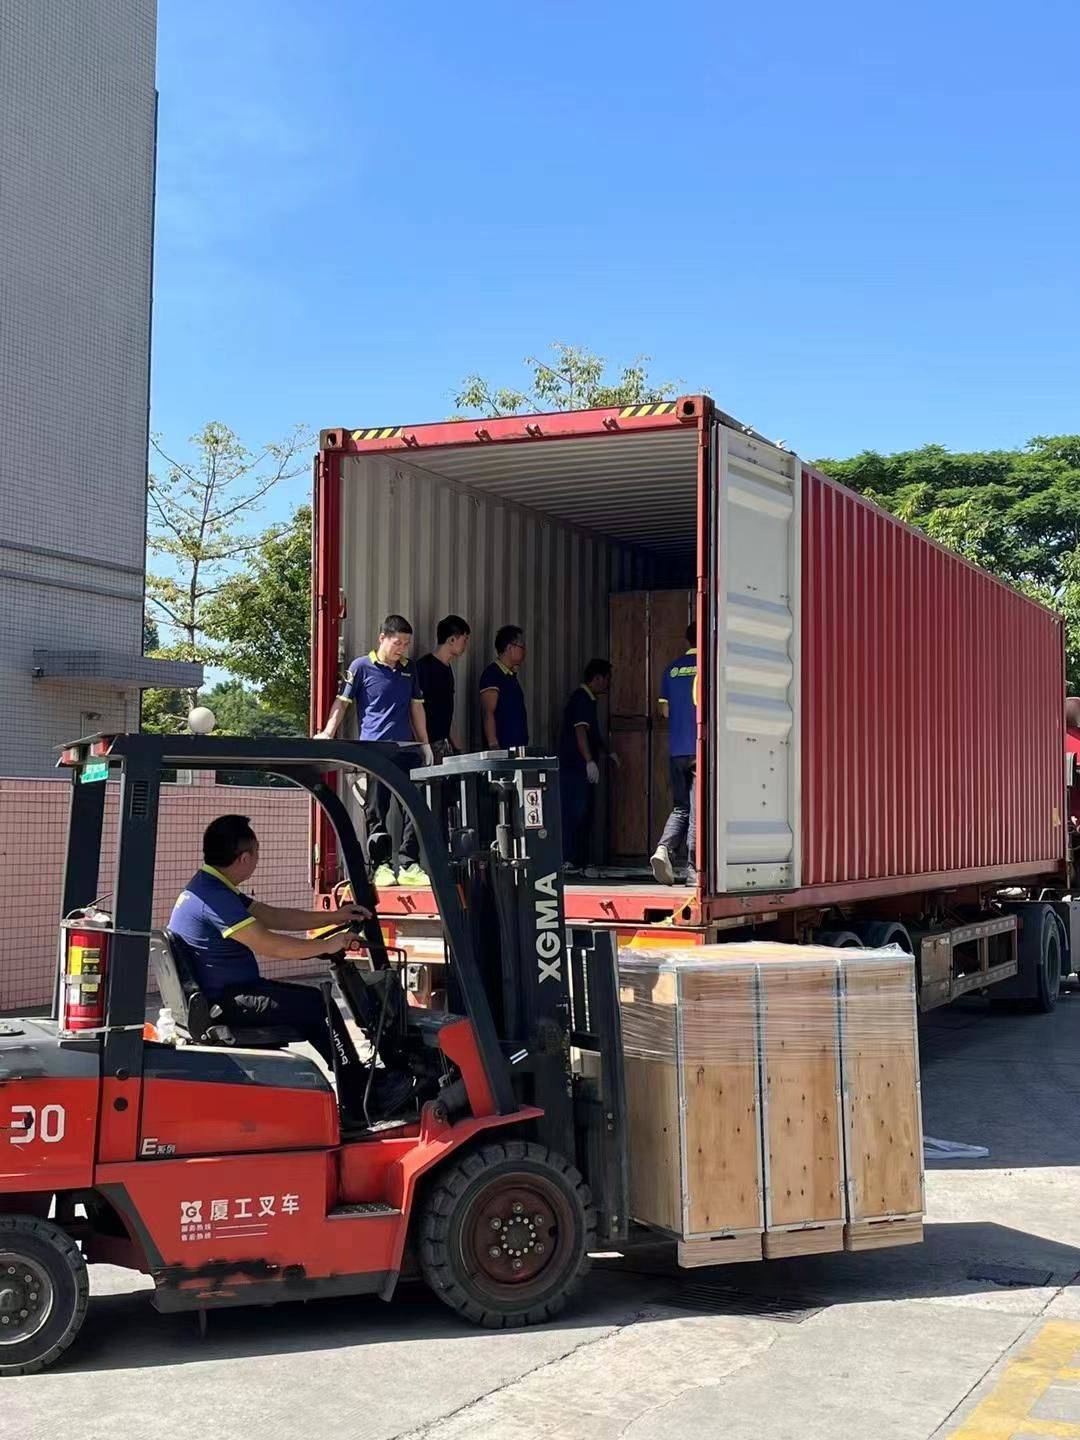 Latest tripod turnstile shipment for Brazil distributor – Intelbras